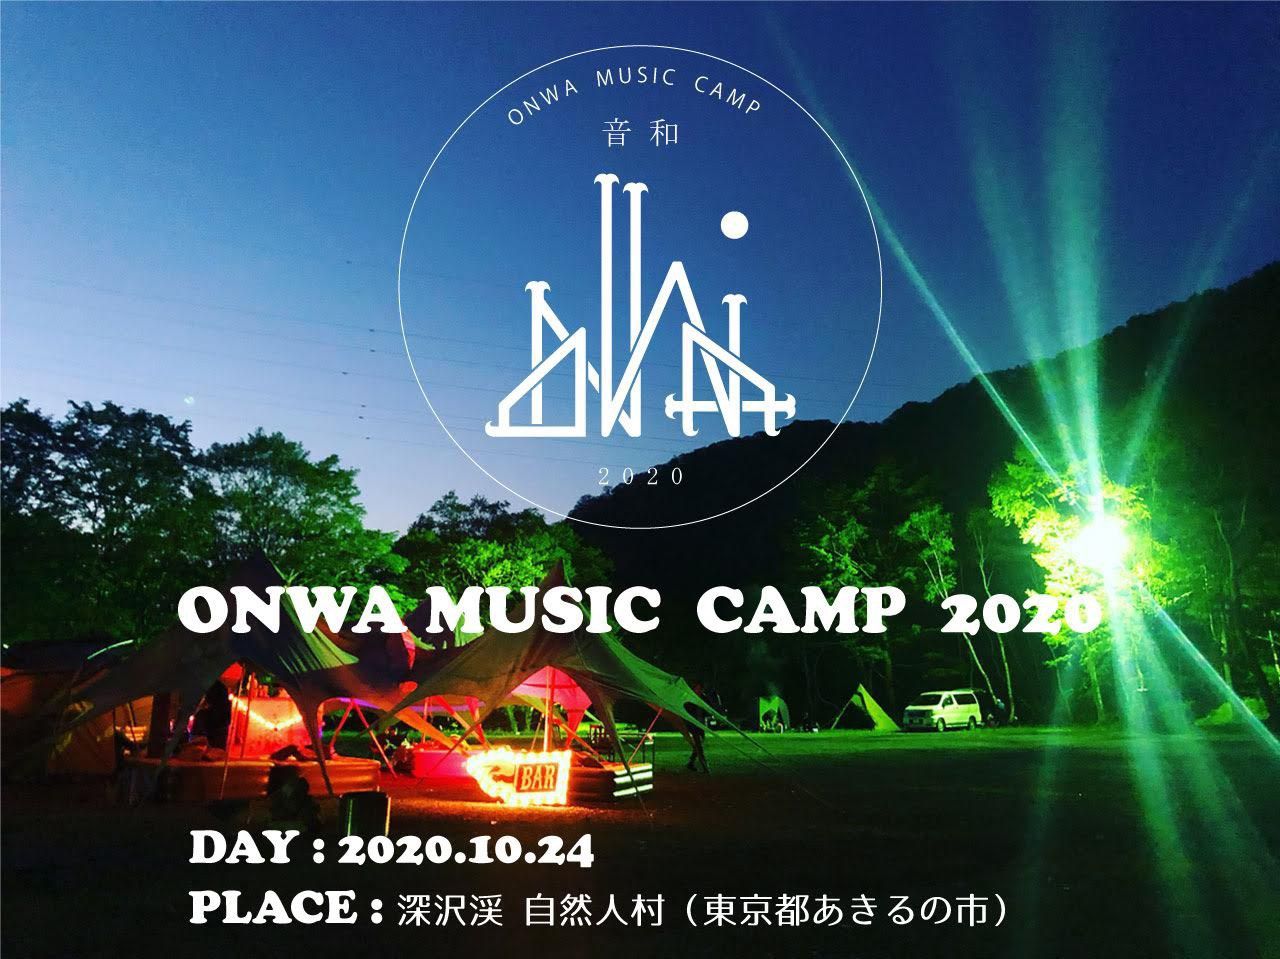 ONWA MUSIC CAMP 2020